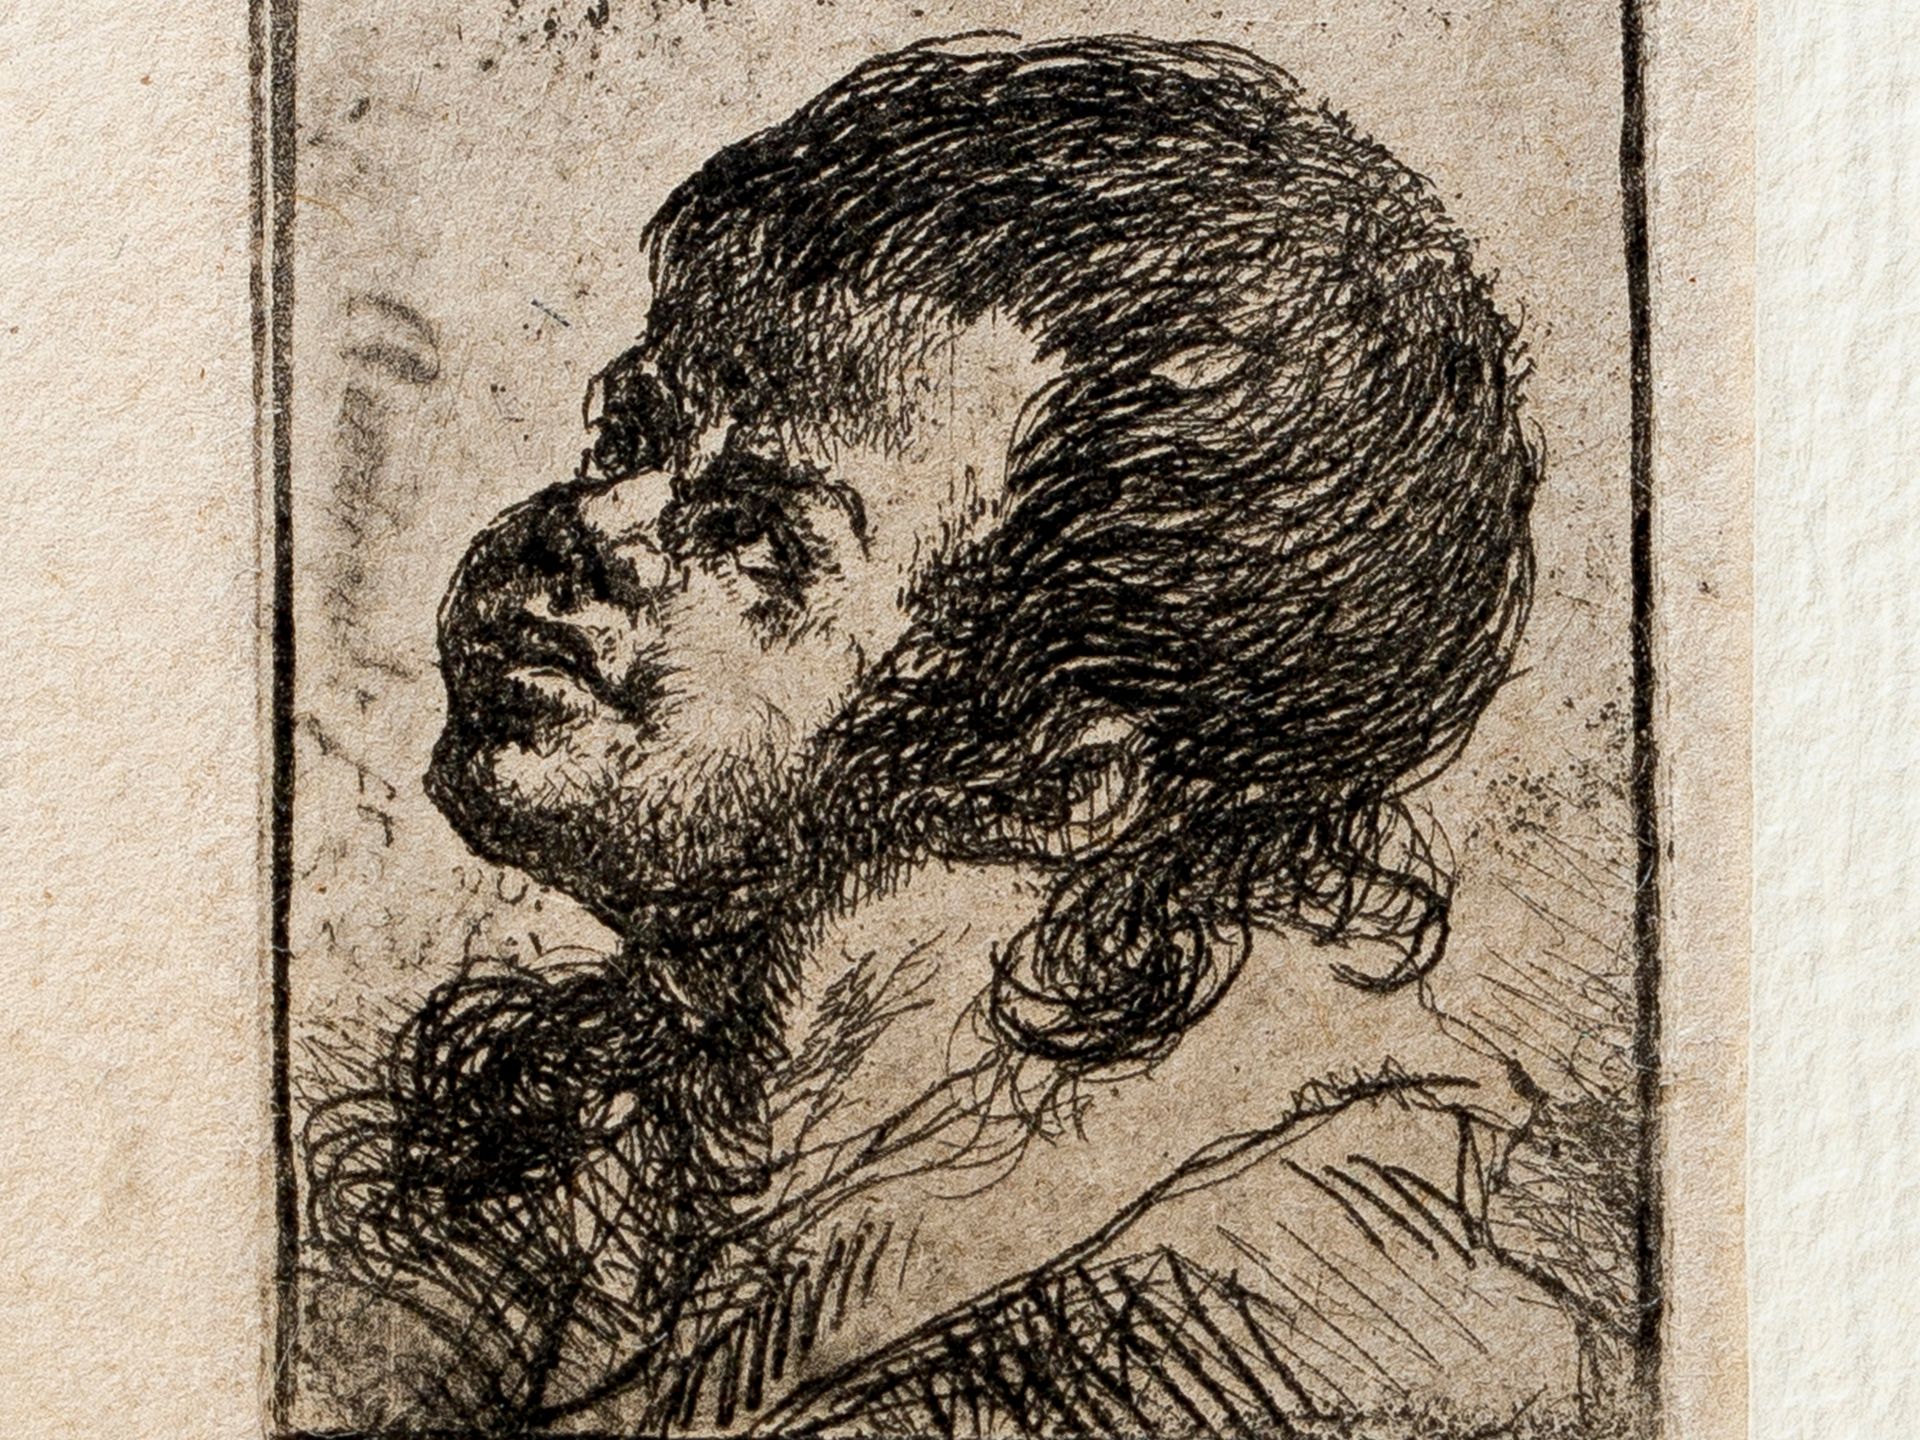 After Rembrandt van Rijn, Leiden 1606 - 1669 Amsterdam, Follower